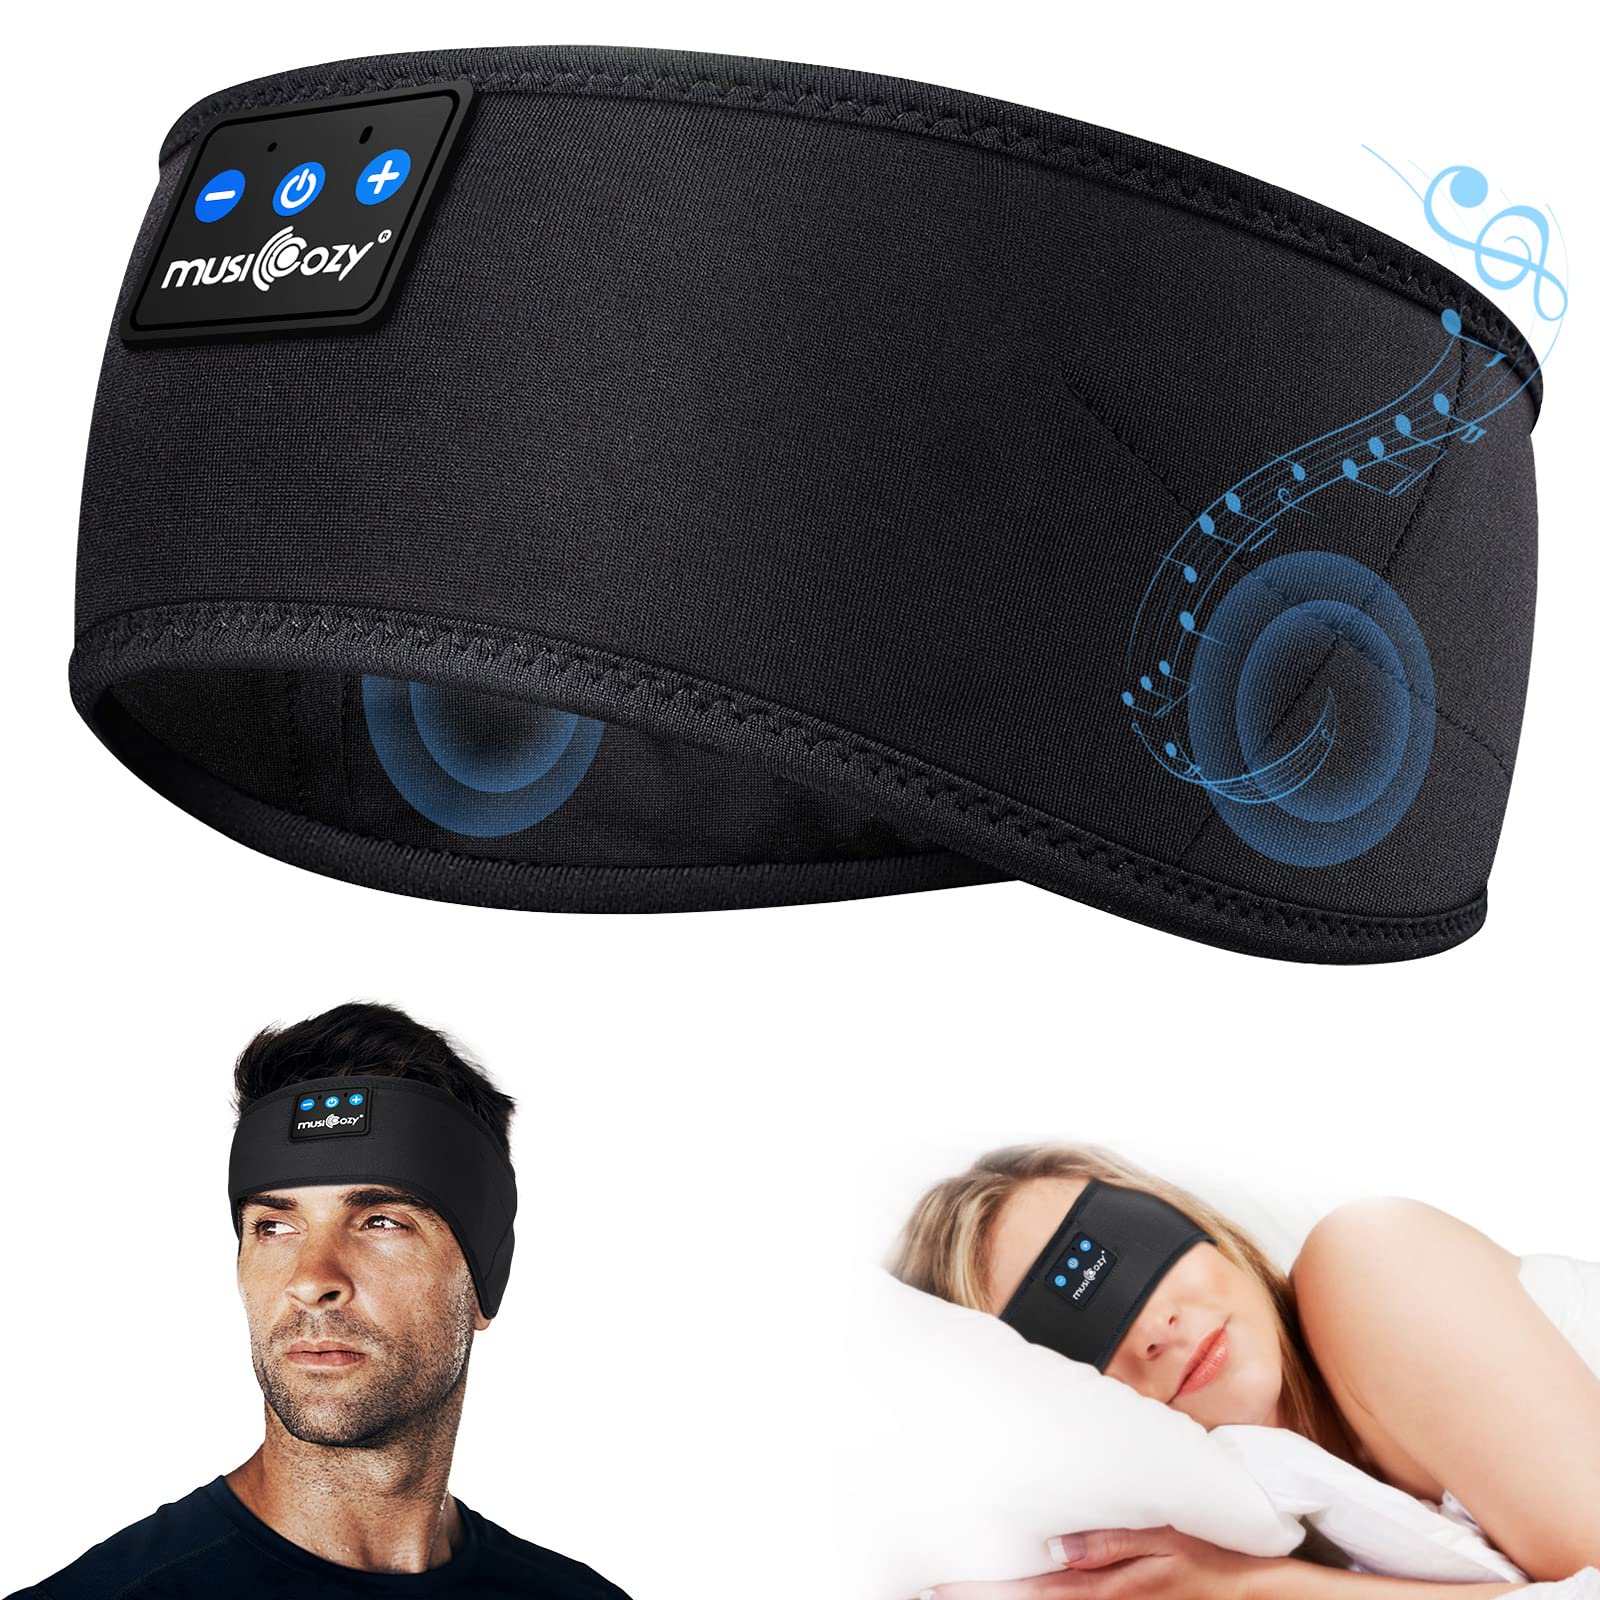 MUSICOZY 睡眠耳机蓝牙头带、运动无线耳机 - 防汗耳机、带超薄高清立体声扬声器的睡眠耳机非常适合侧睡者失眠、锻炼